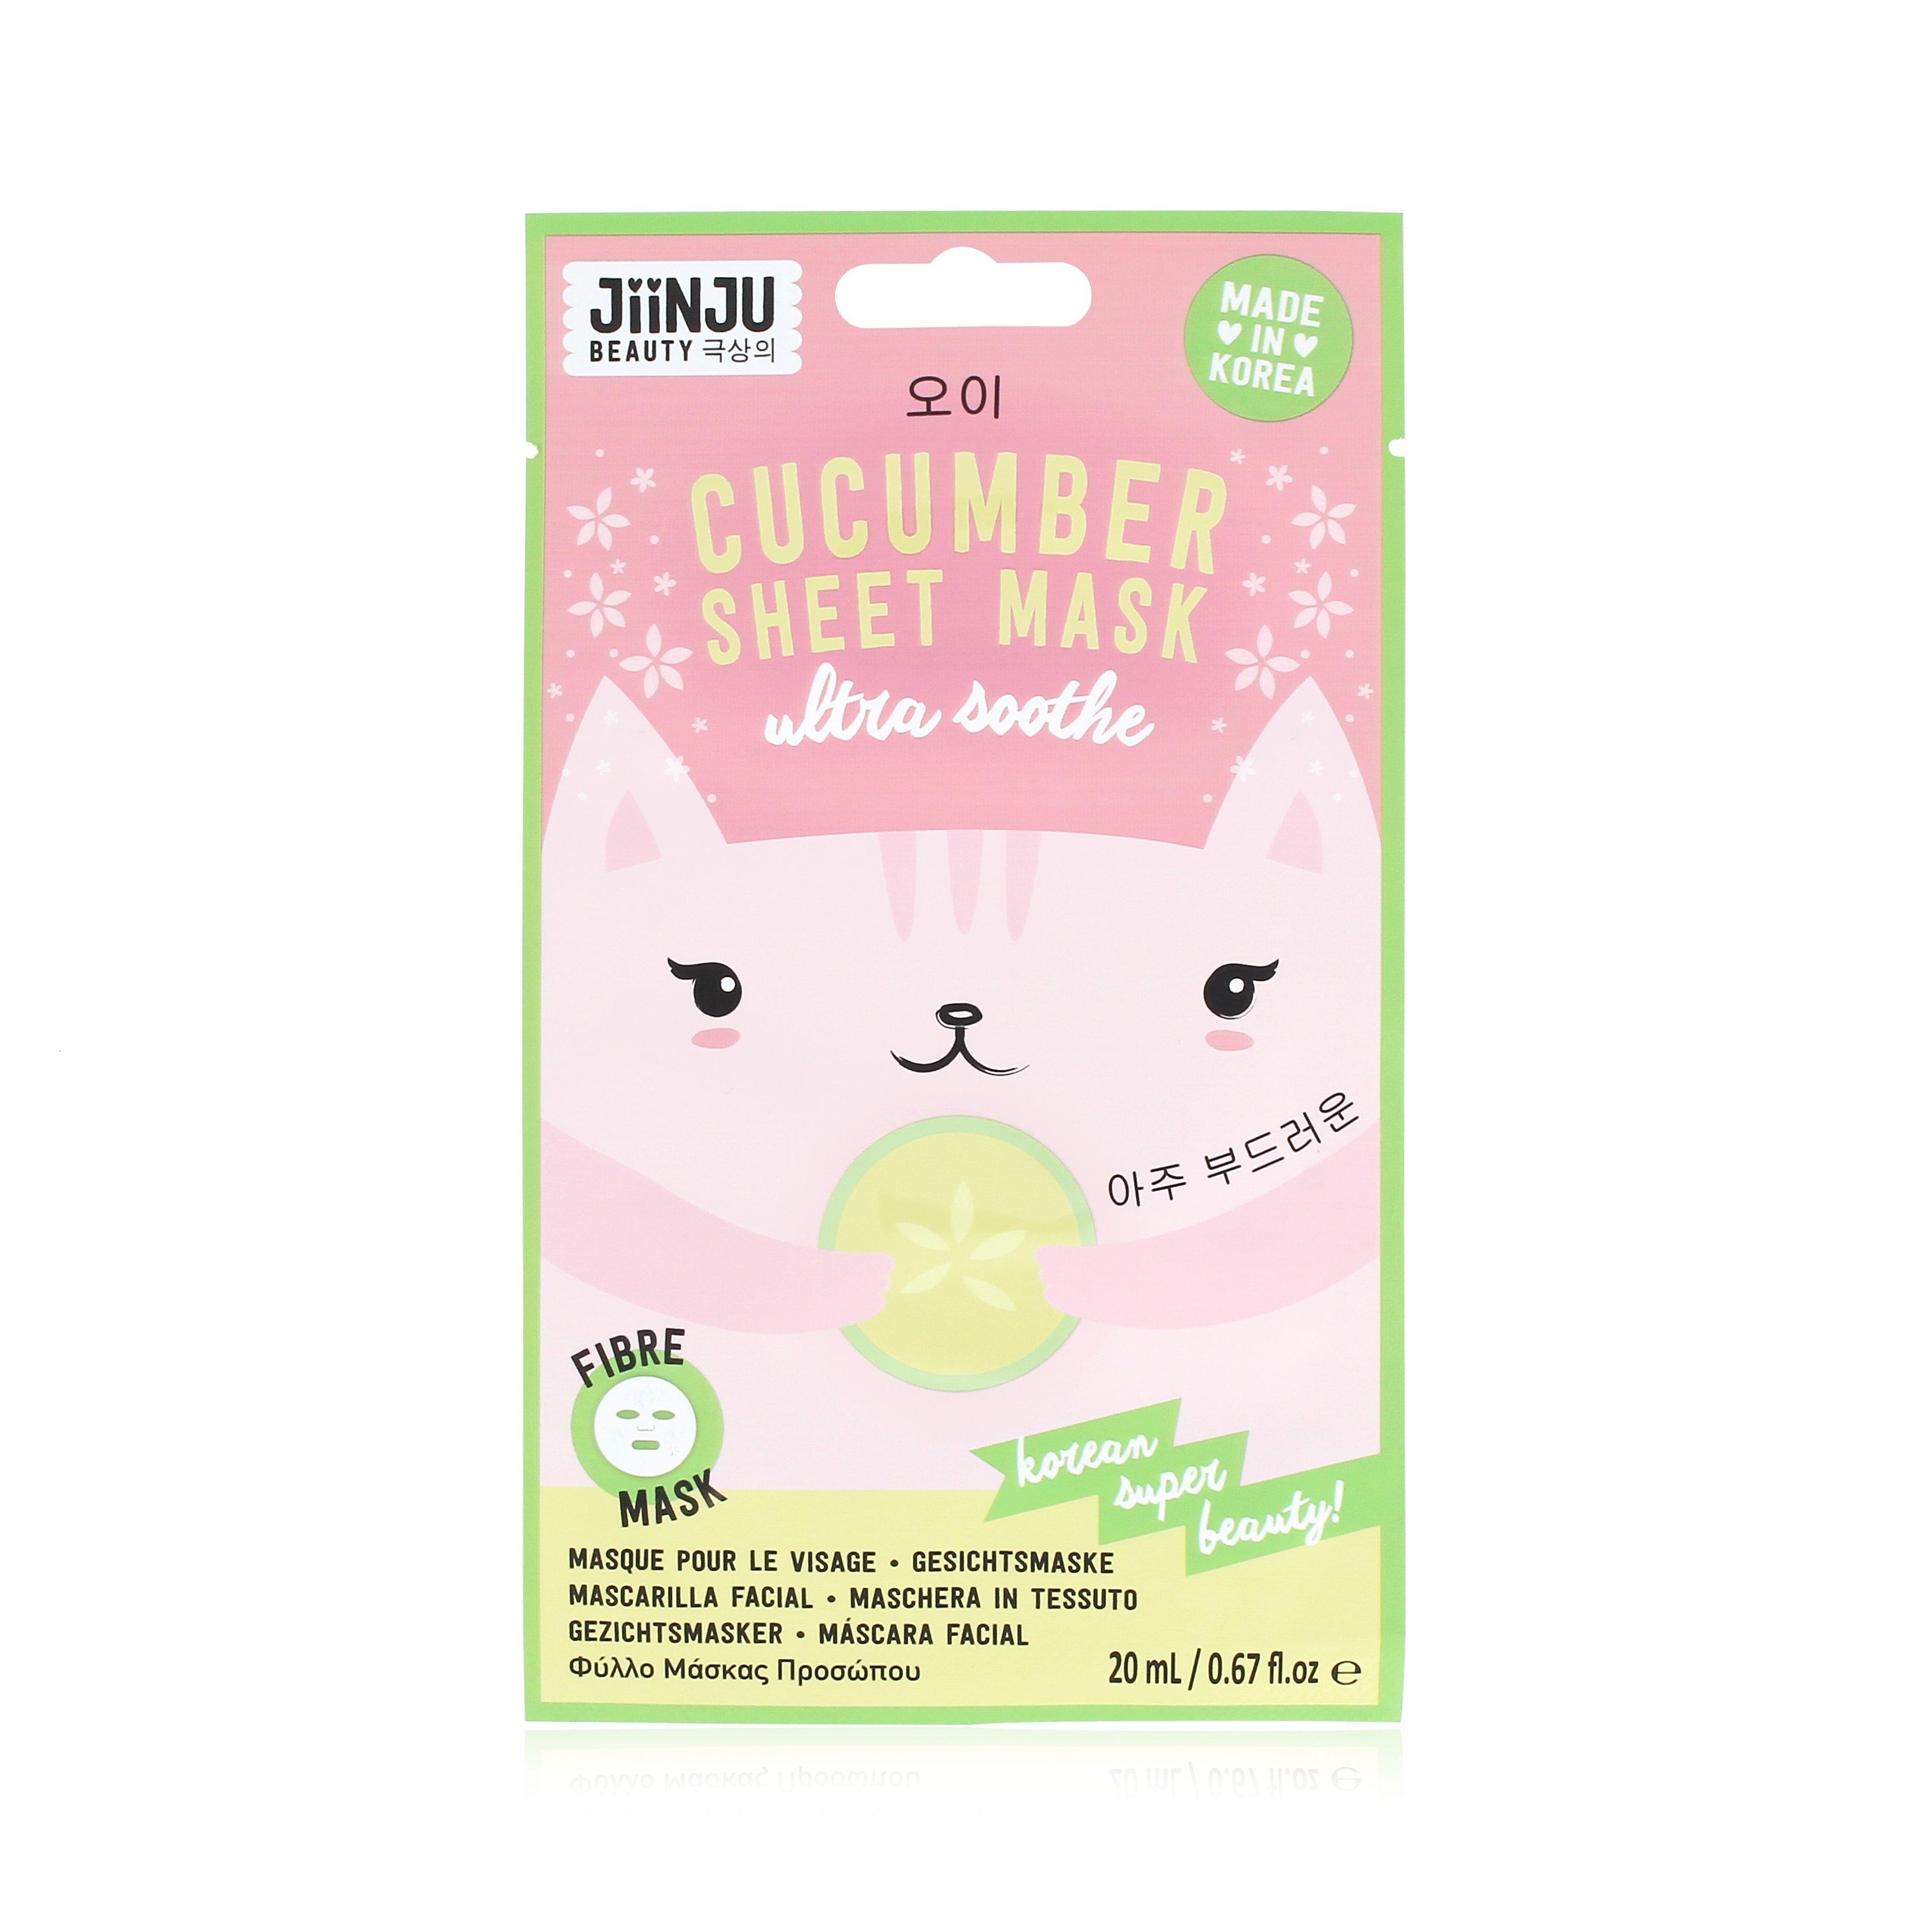 Ultra Soothe Cucumber Sheet Mask